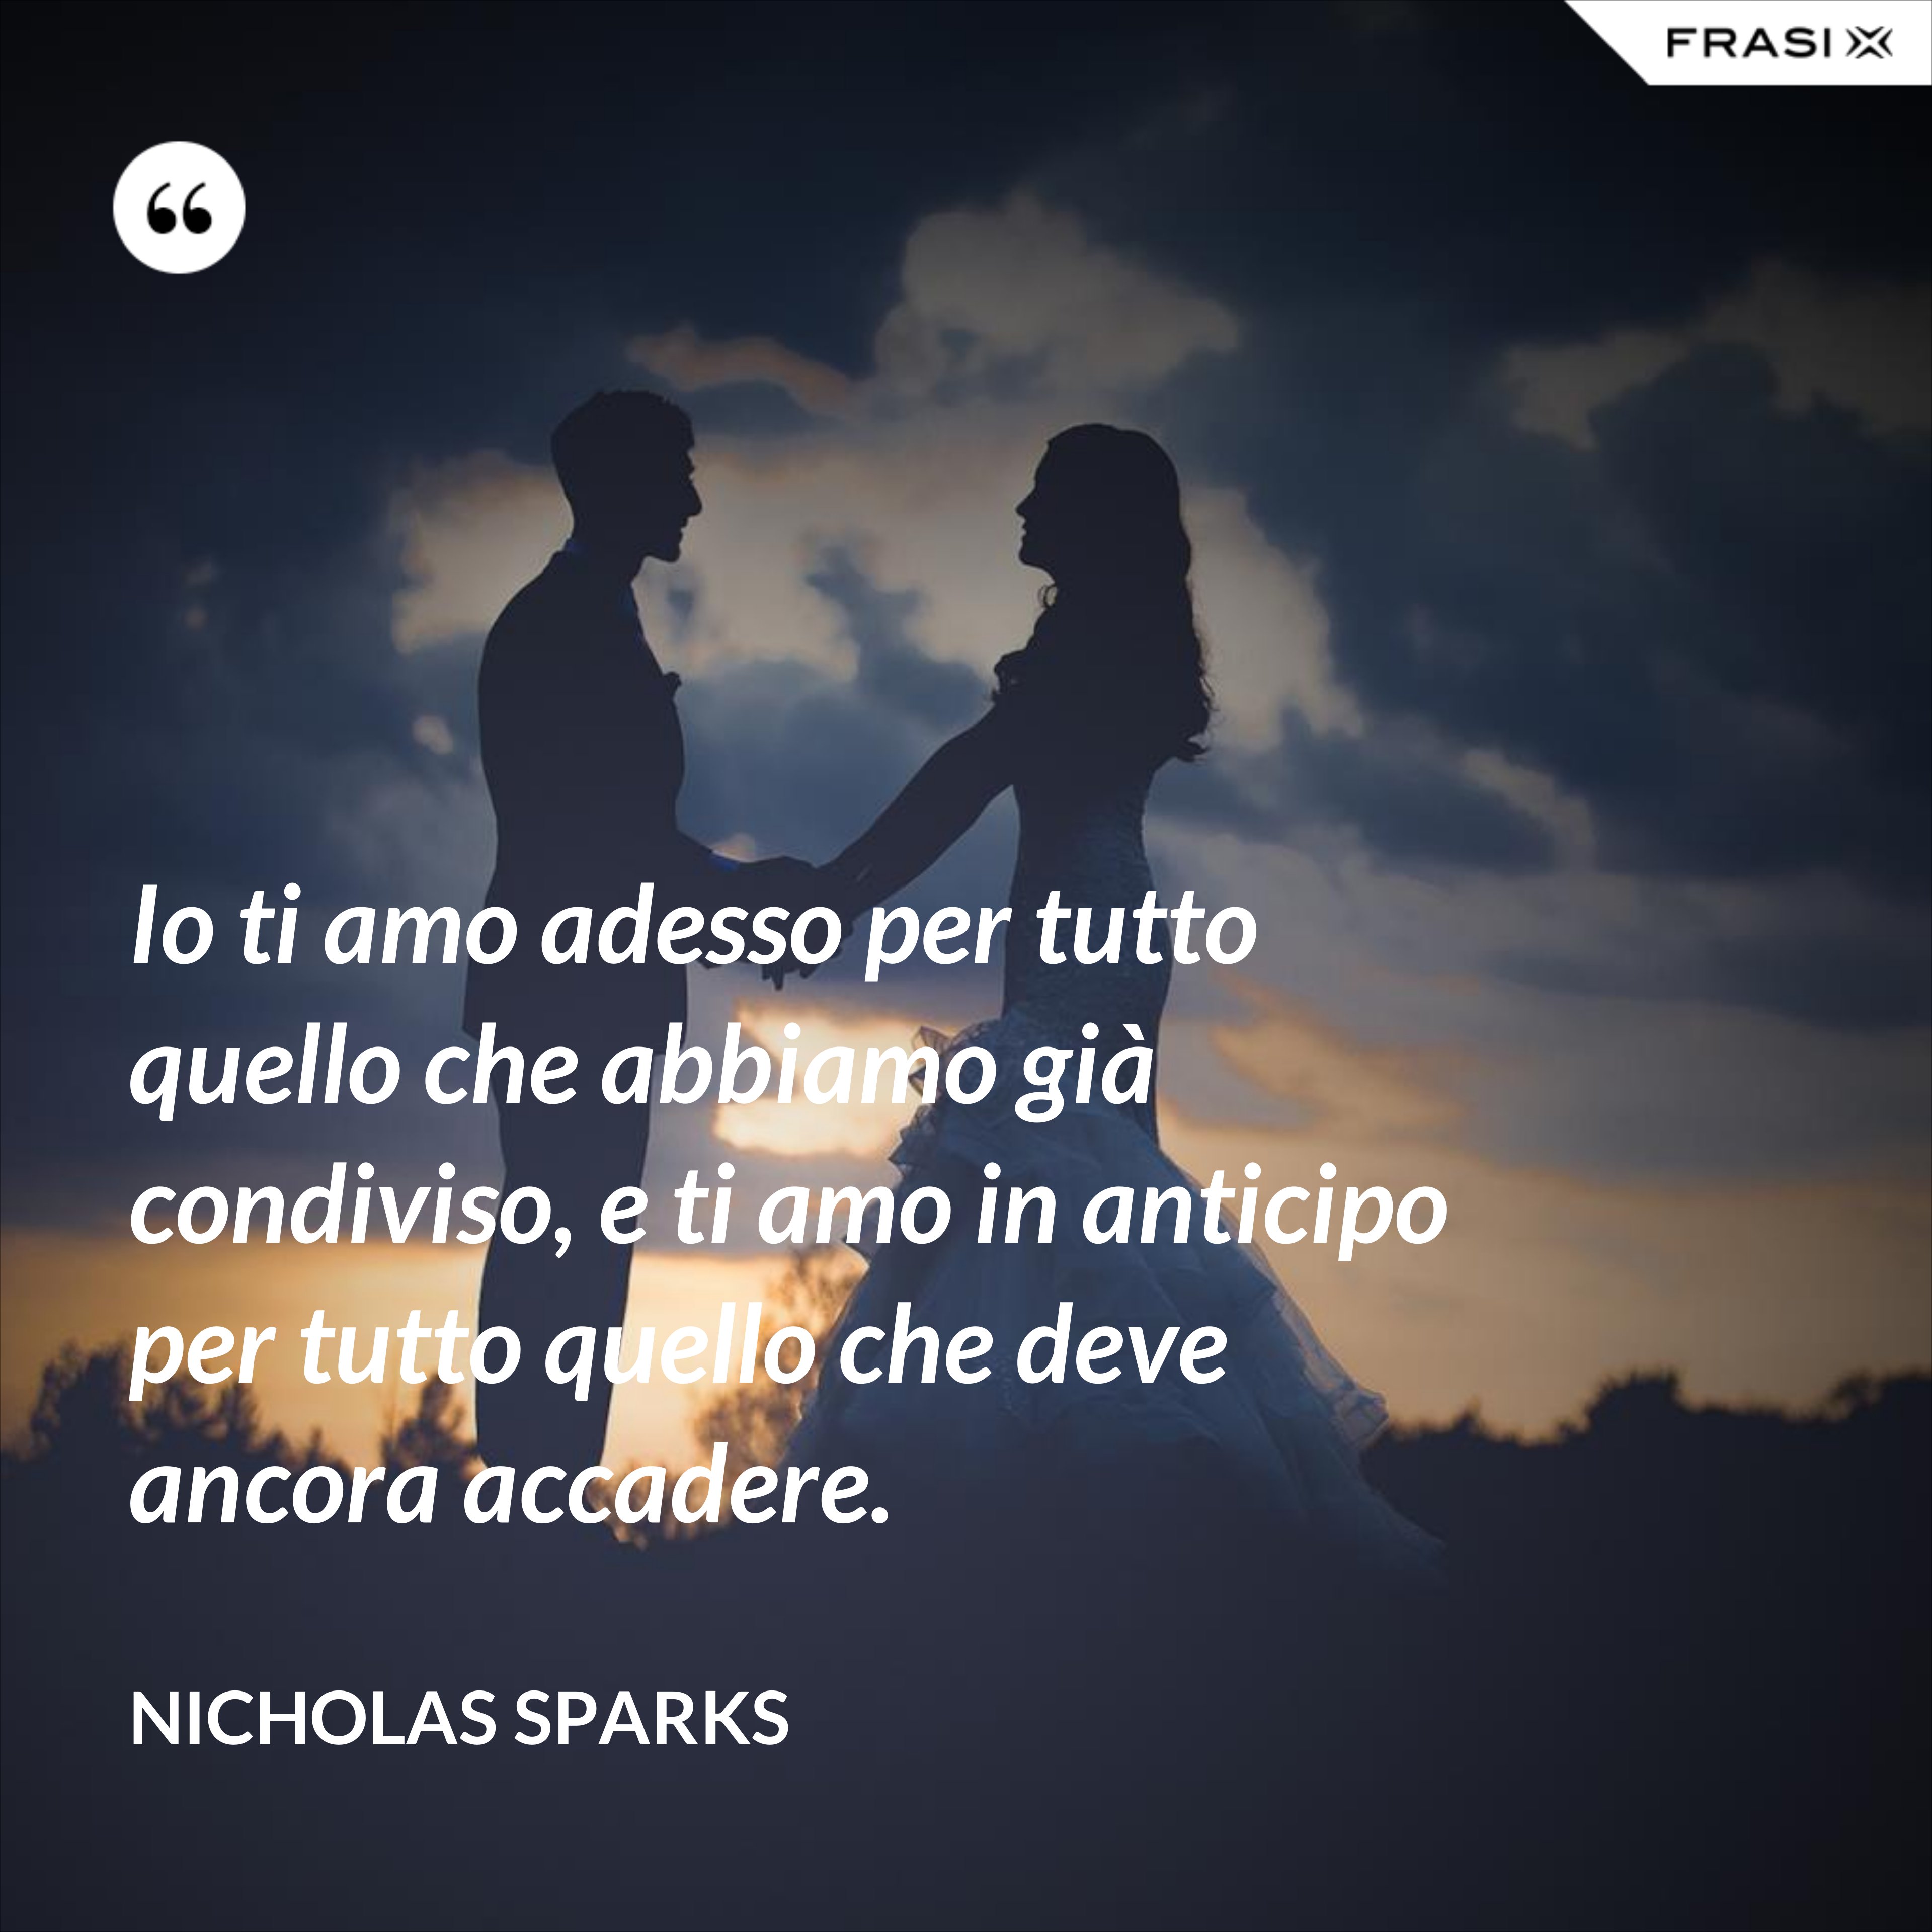 Io ti amo adesso per tutto quello che abbiamo già condiviso, e ti amo in anticipo per tutto quello che deve ancora accadere. - Nicholas Sparks